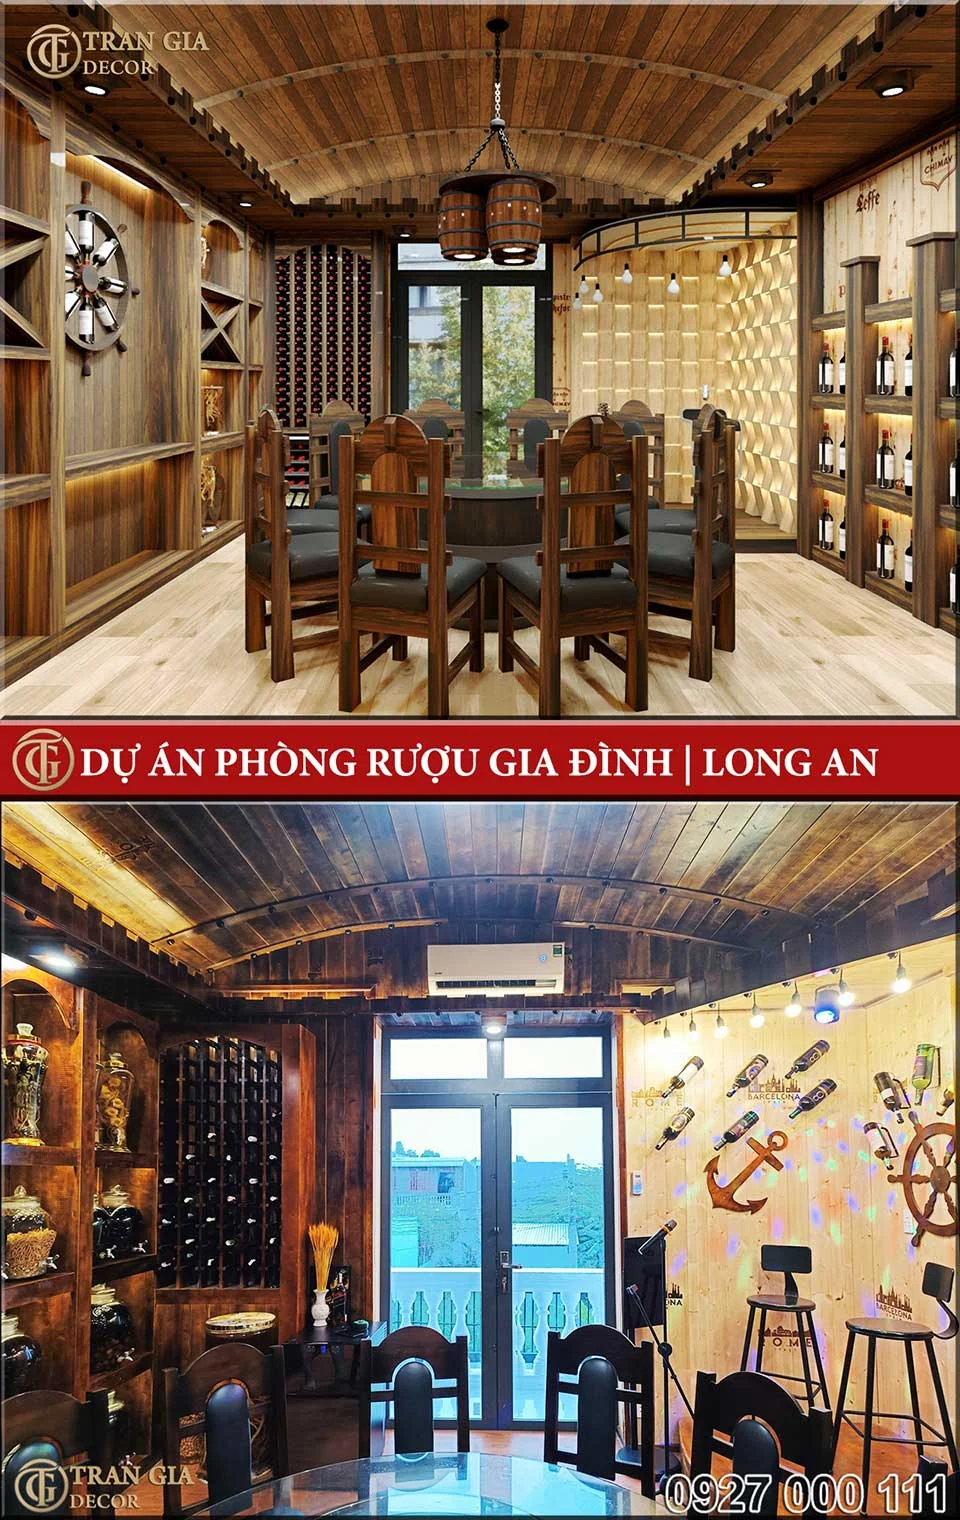 Thiết kế và thi công phòng rượu gia đình ở Long An